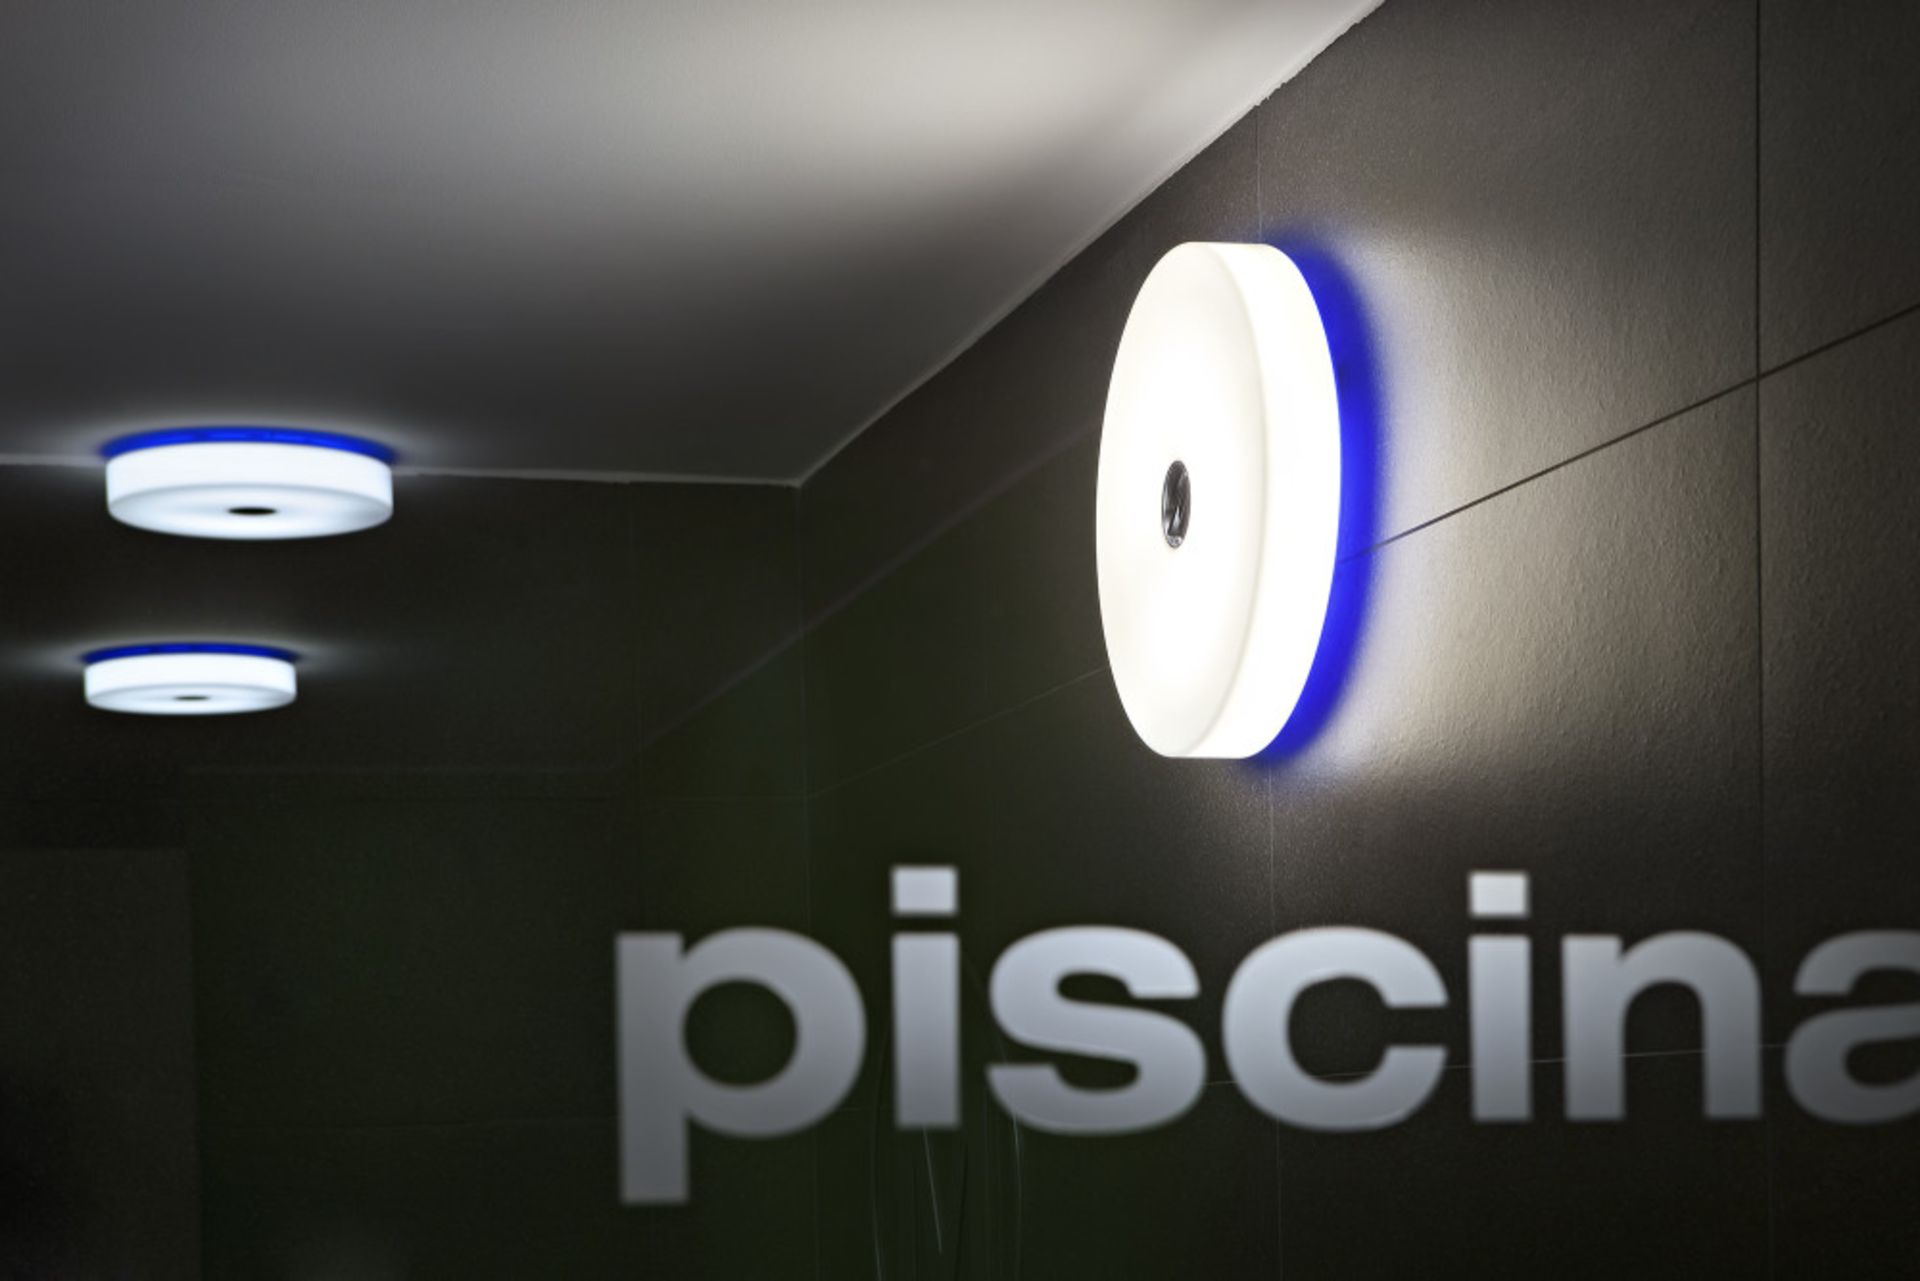 2 Piscina Designer Wall / Ceiling Lights – NO VAT